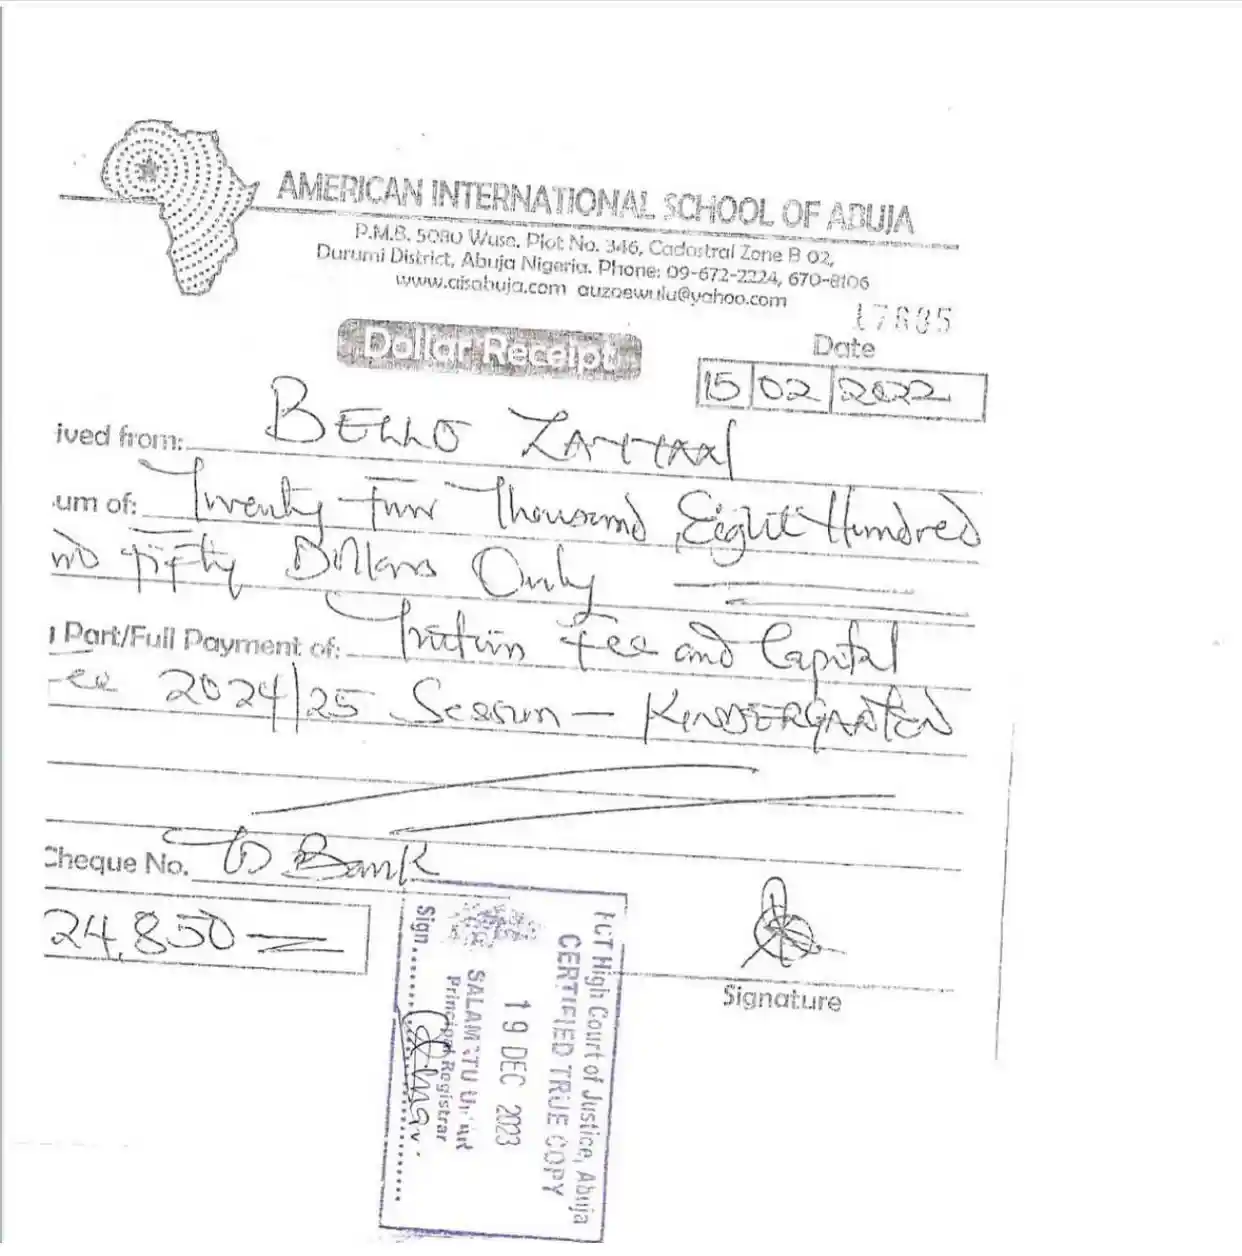 Yahaya Bello's children's school fees refund